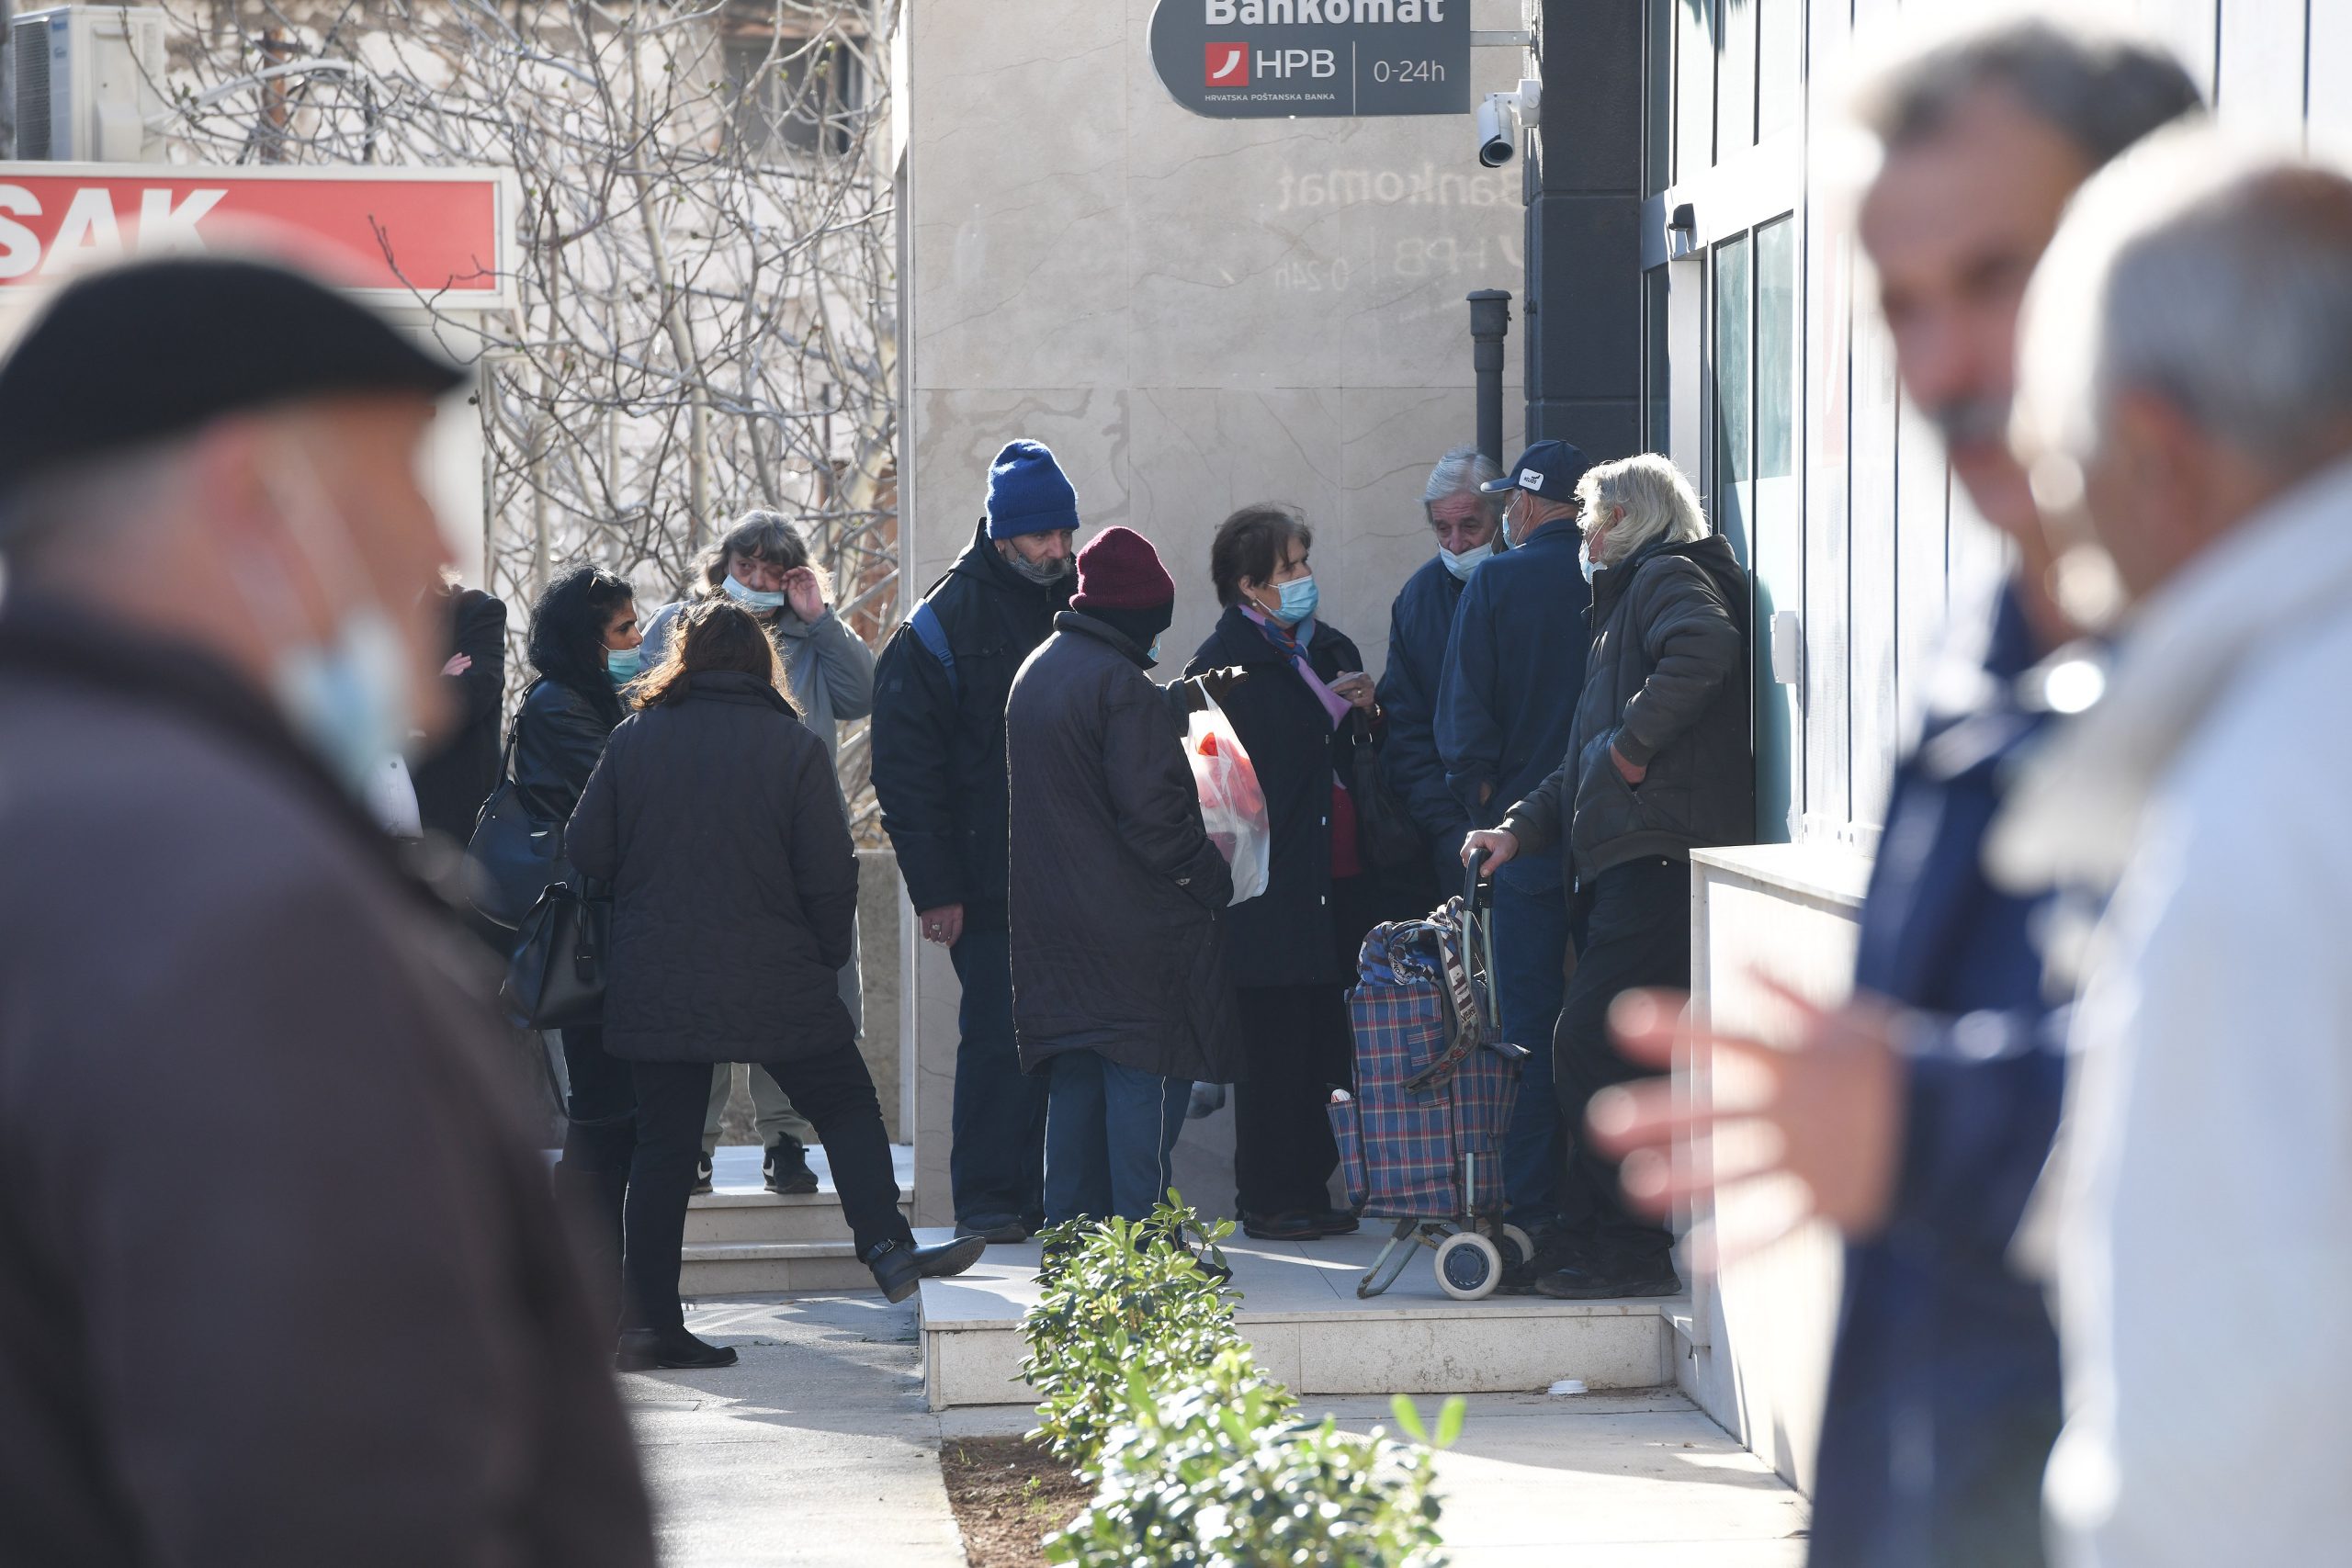 01.03.2021., Sibenik - Guzve za mirovine ispred banke u Sibeniku.
Photo: Hrvoje Jelavic/PIXSELL